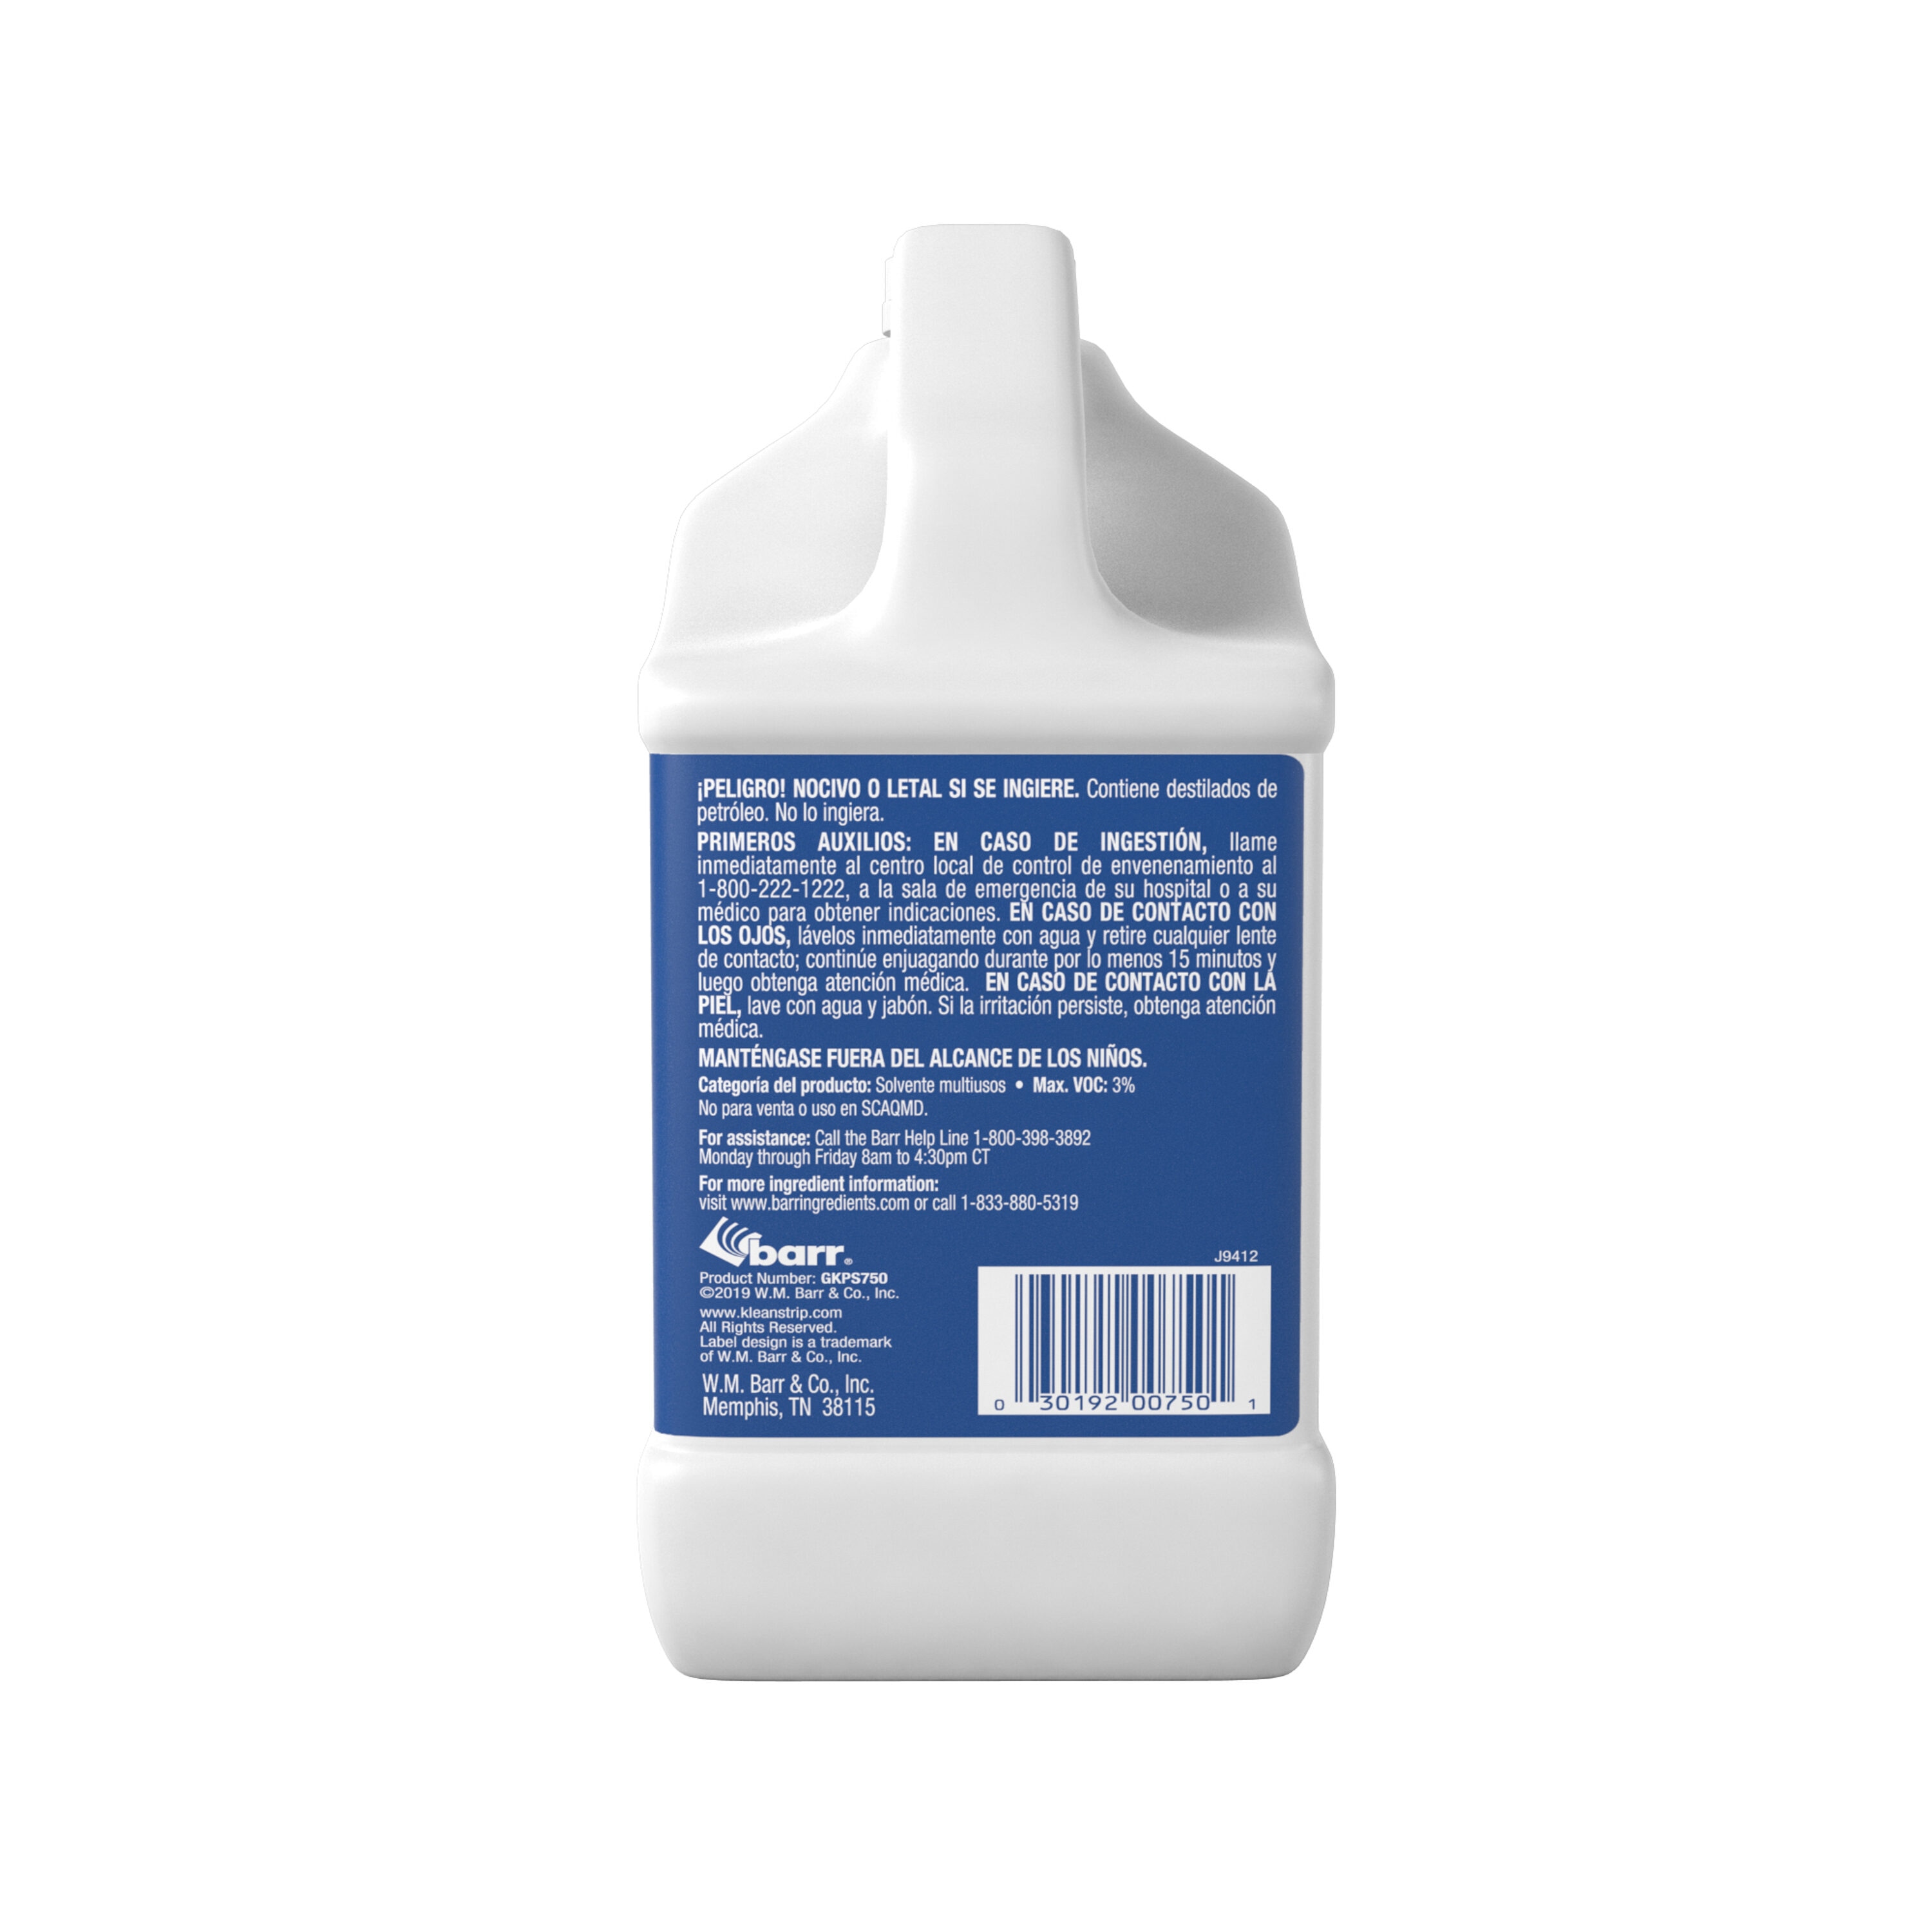 Buy online Vitroclean 3-in-1 Vitroceramic Cleaner Spray Gun, 450 ml  Vitroclean